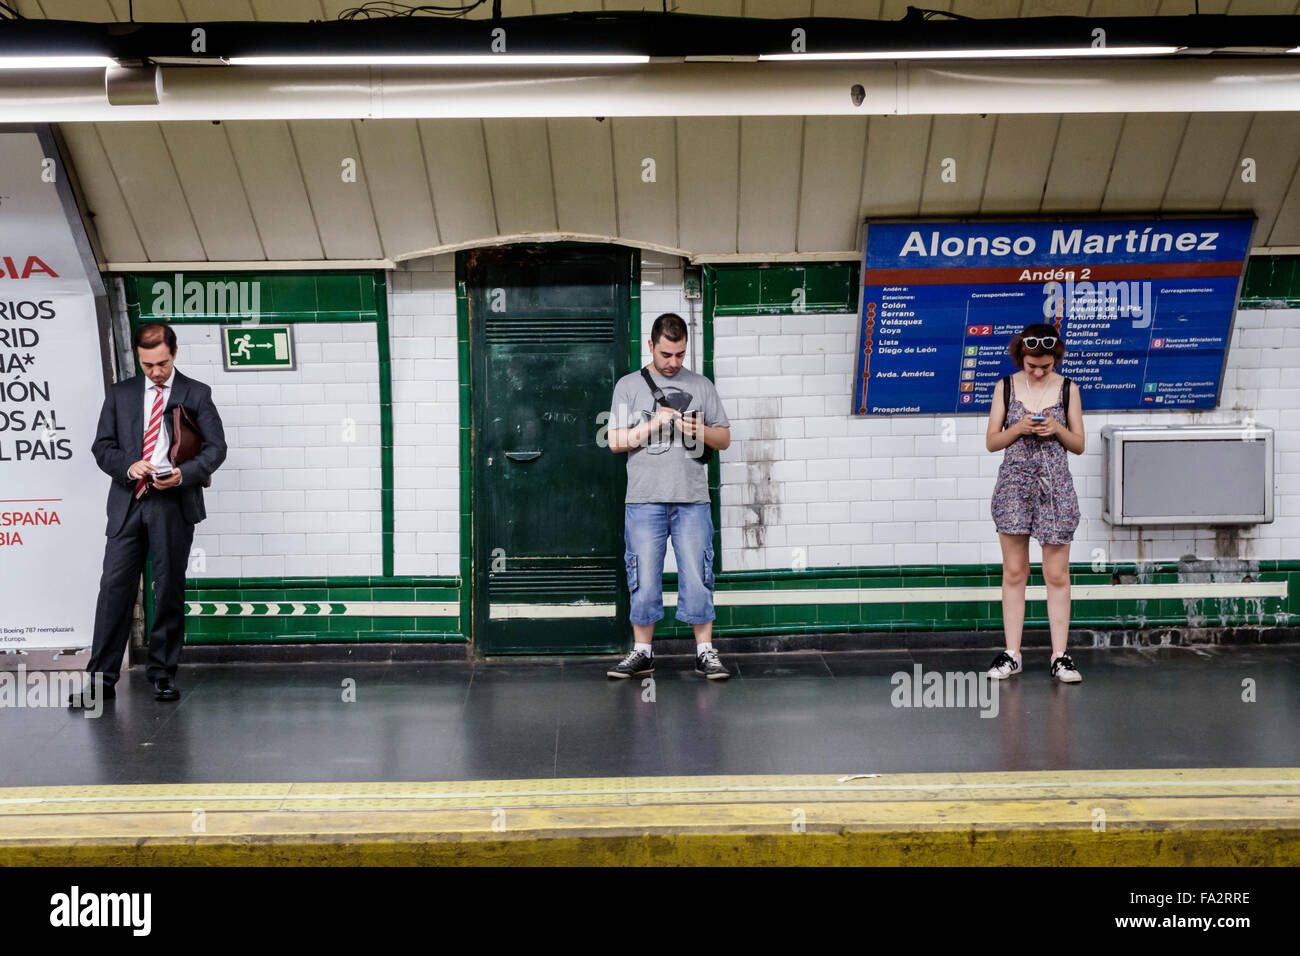 Madrid Spagna,Hispanic Chamberi,stazione della metropolitana Alonzo Martinez,metropolitana,treno,uomo uomini maschio,donna donne donne,in attesa,smartphone telefoni cellulari SMS Foto Stock